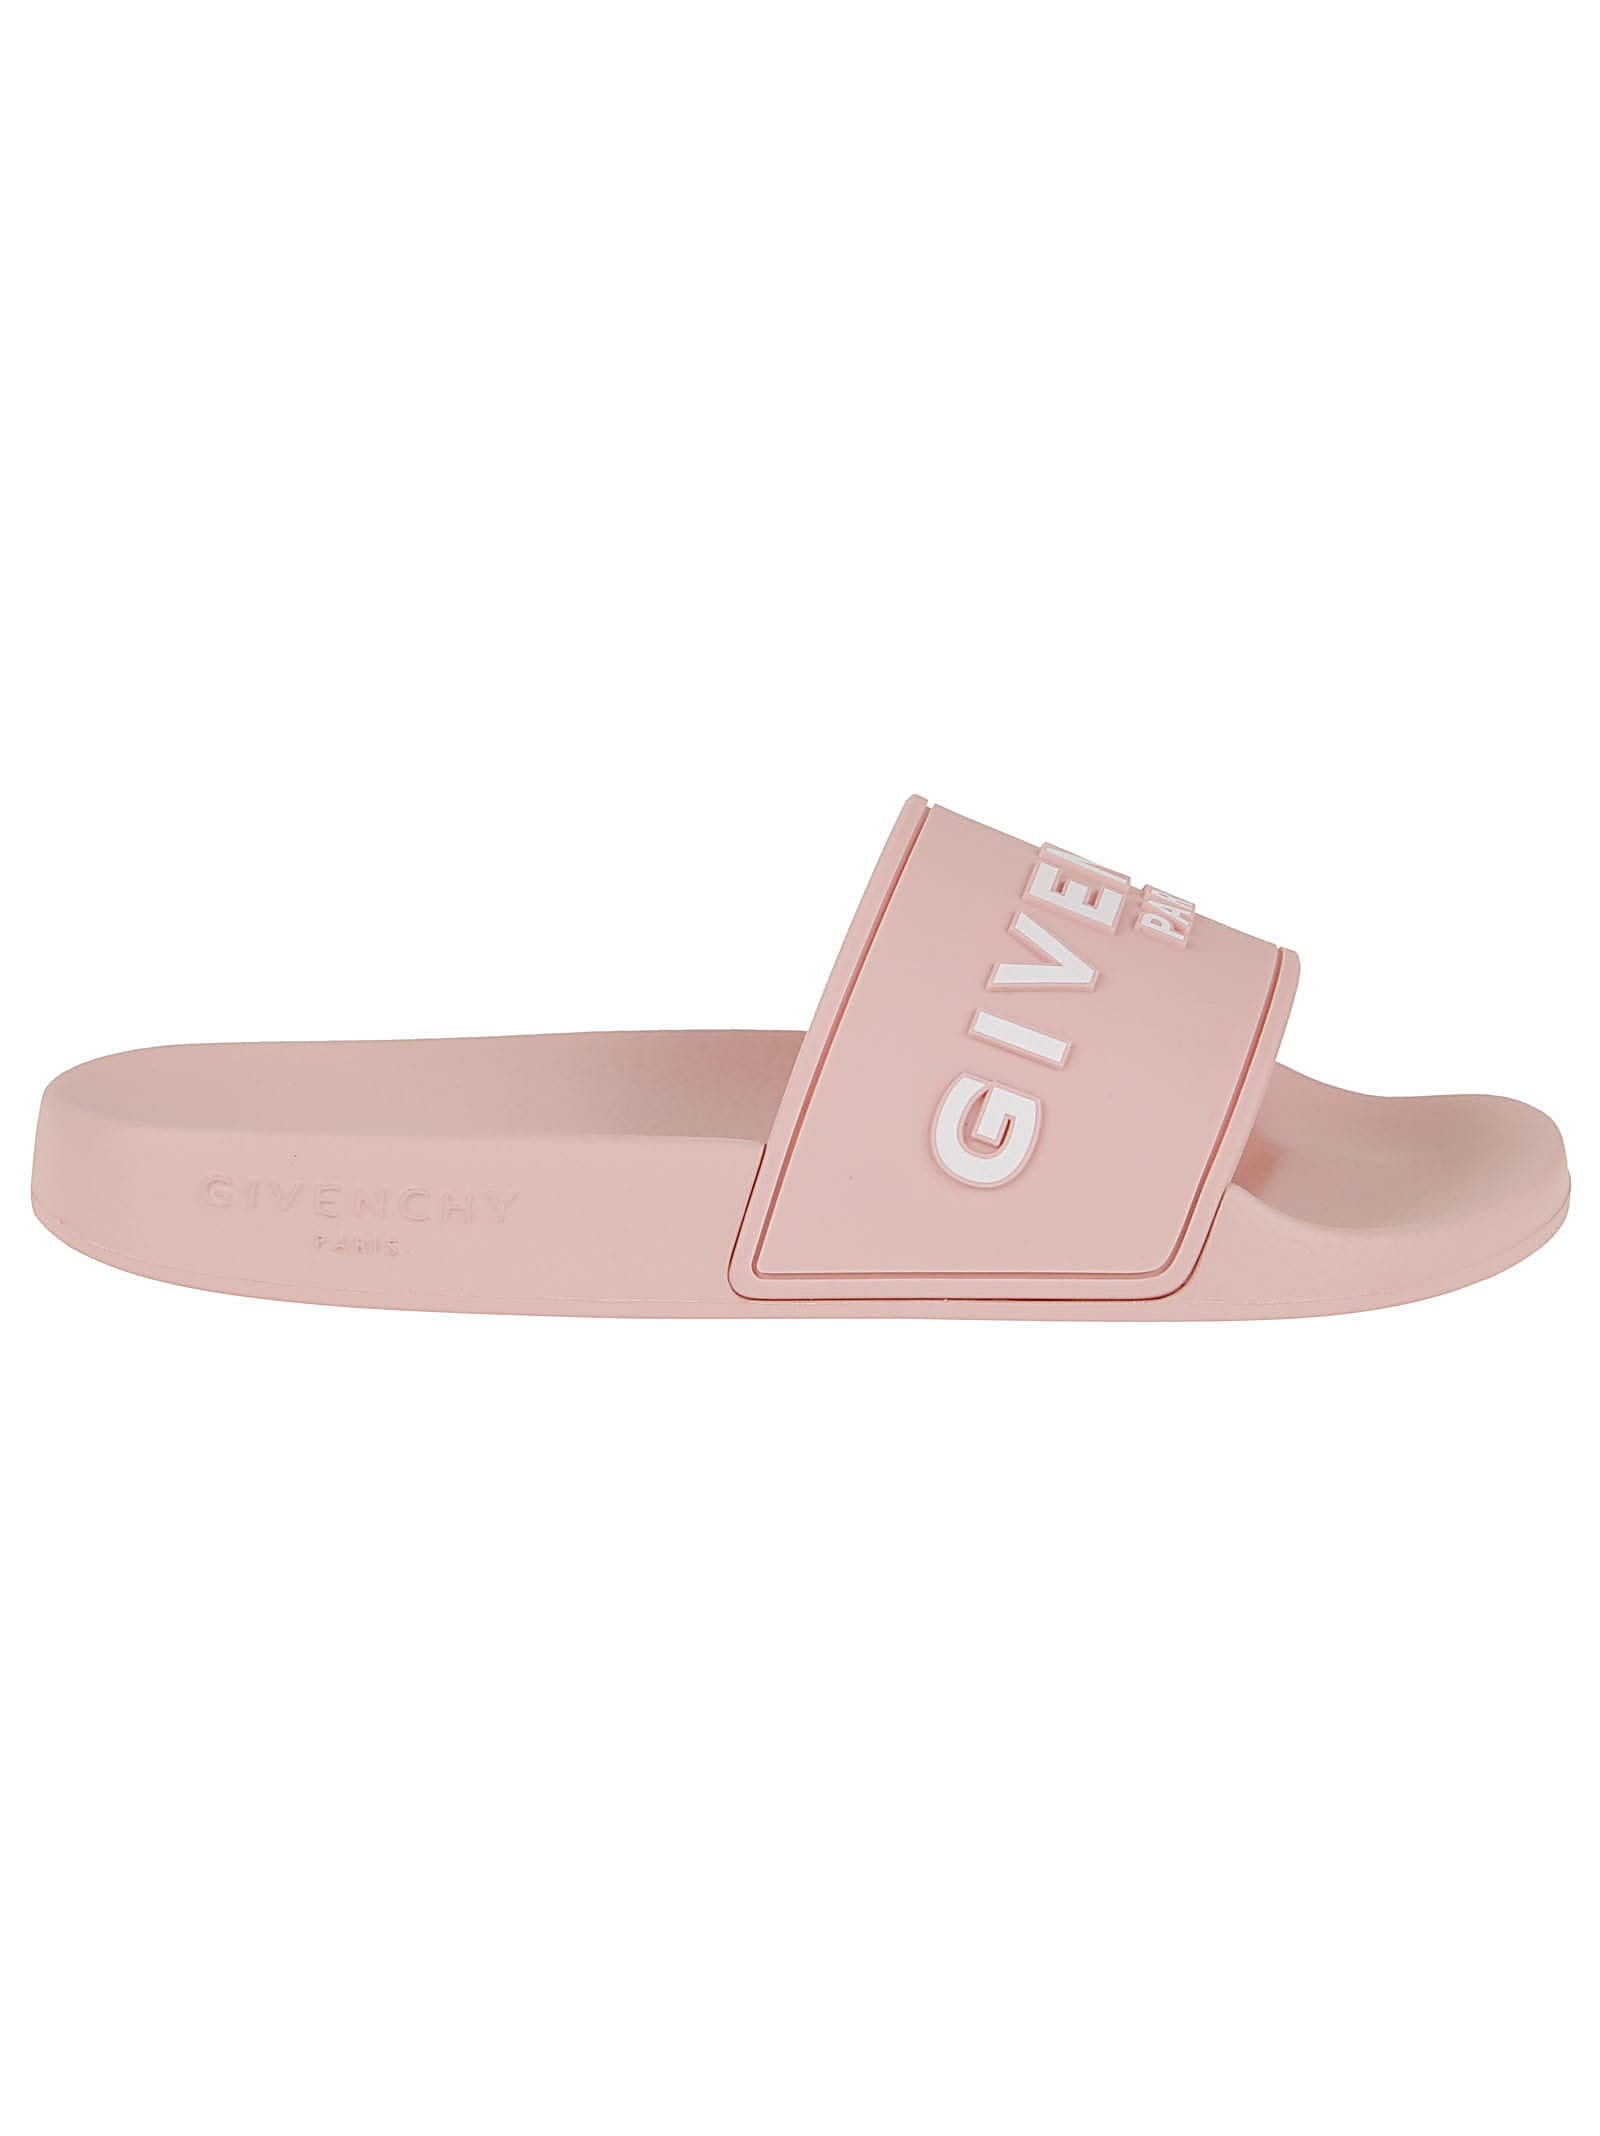 givenchy slides pink